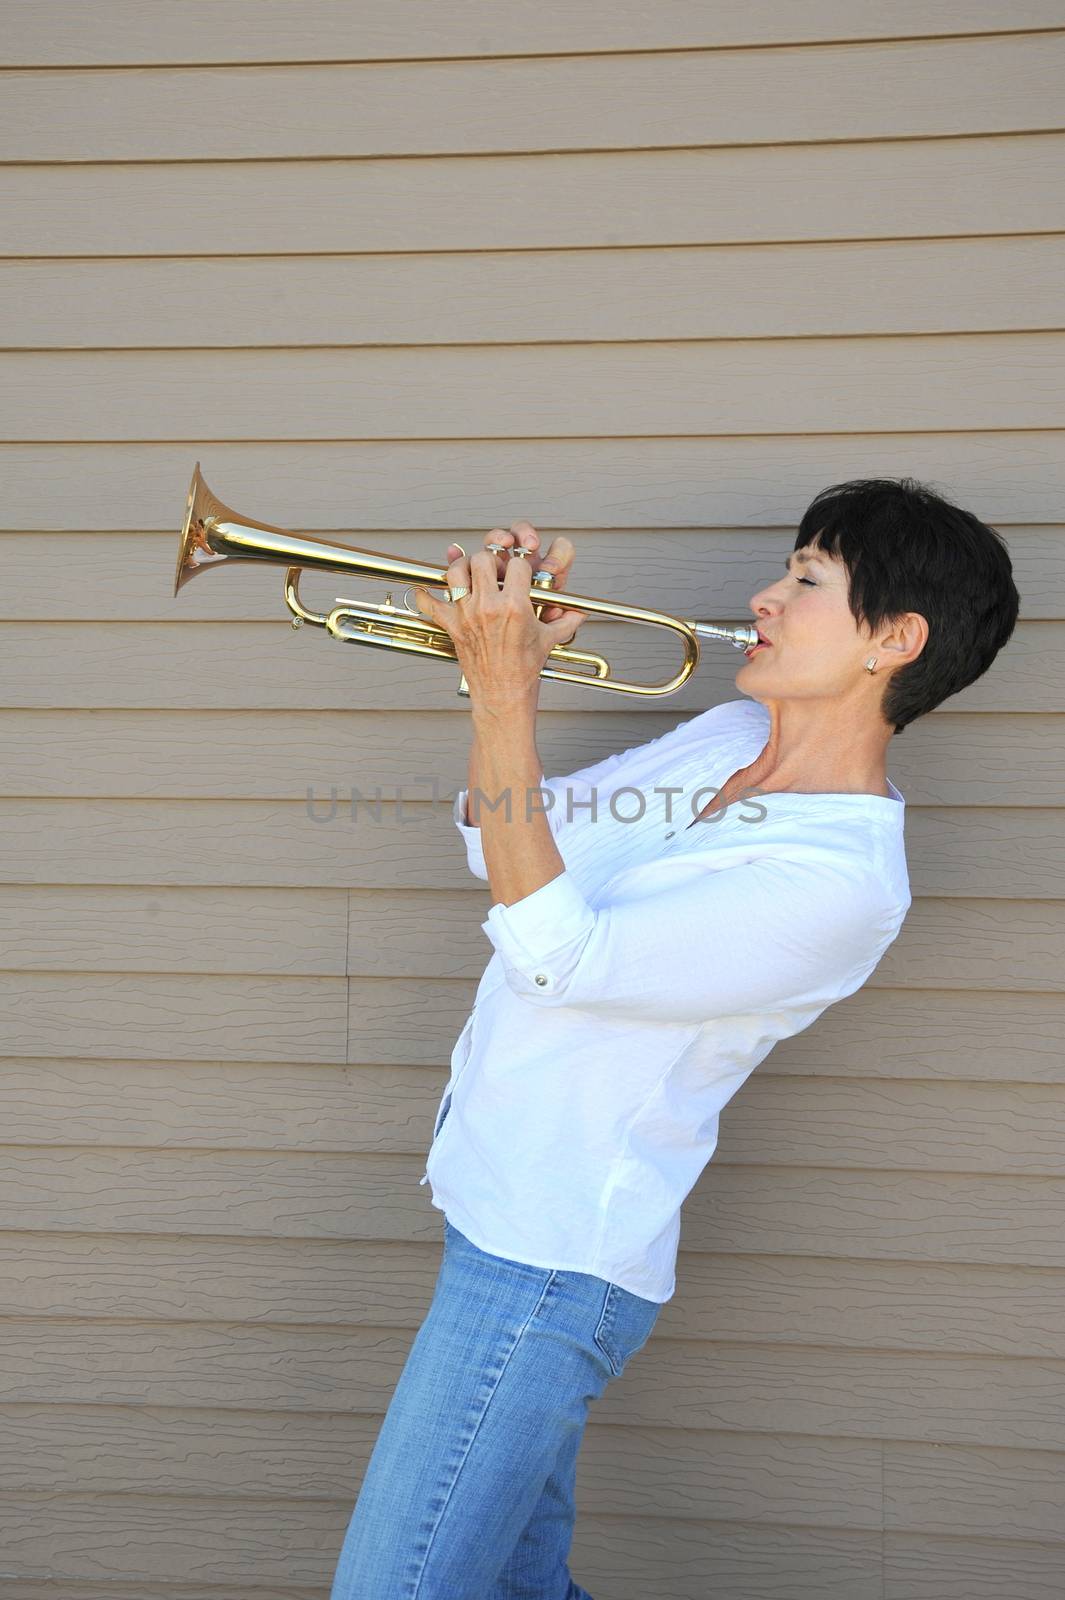 Female trumpet player. by oscarcwilliams